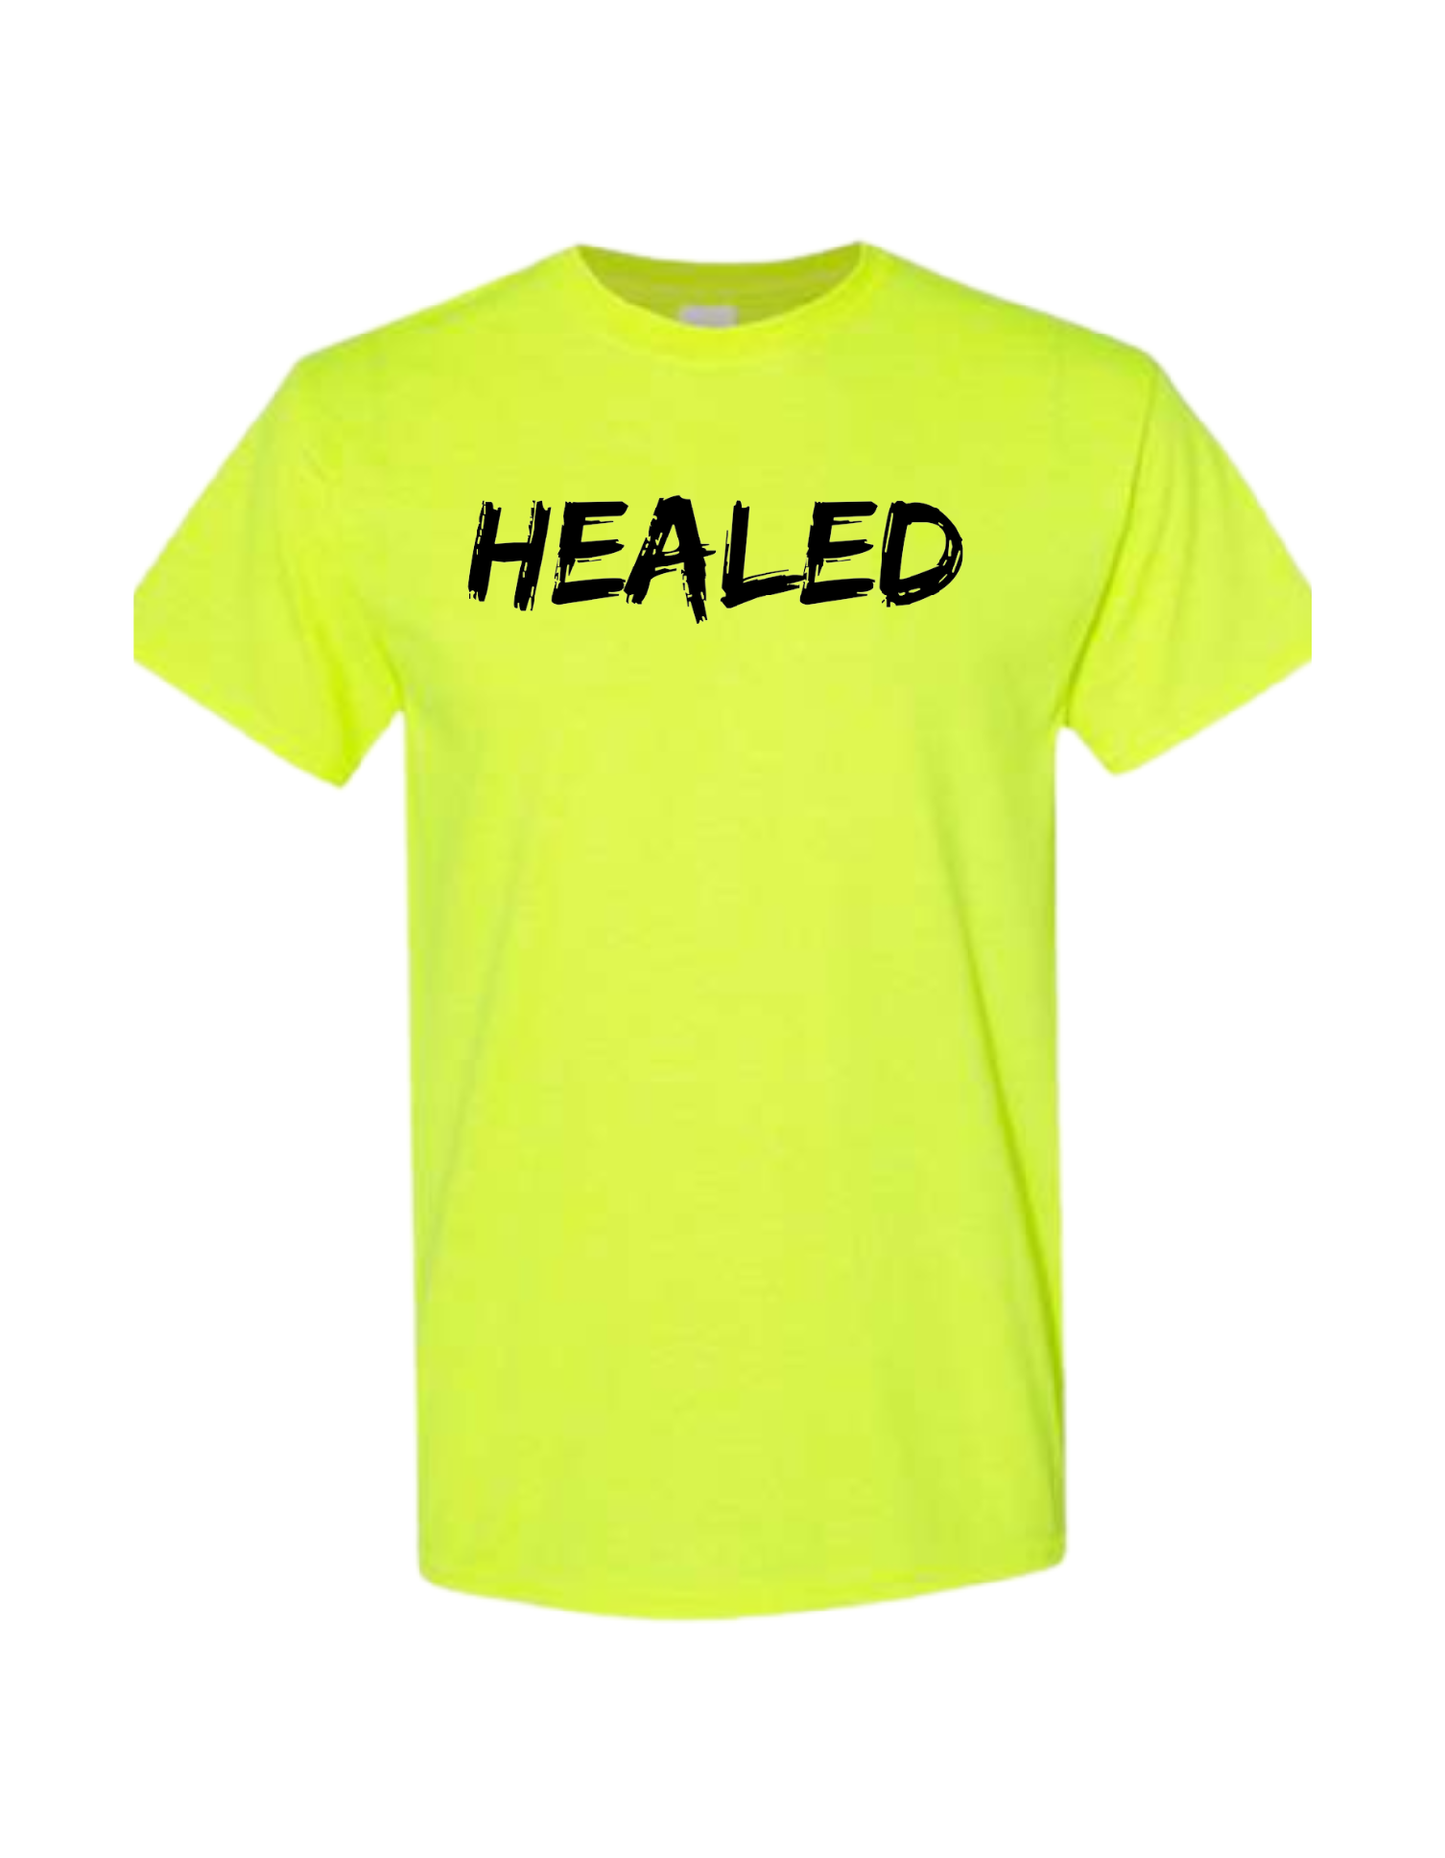 Healed Tshirt